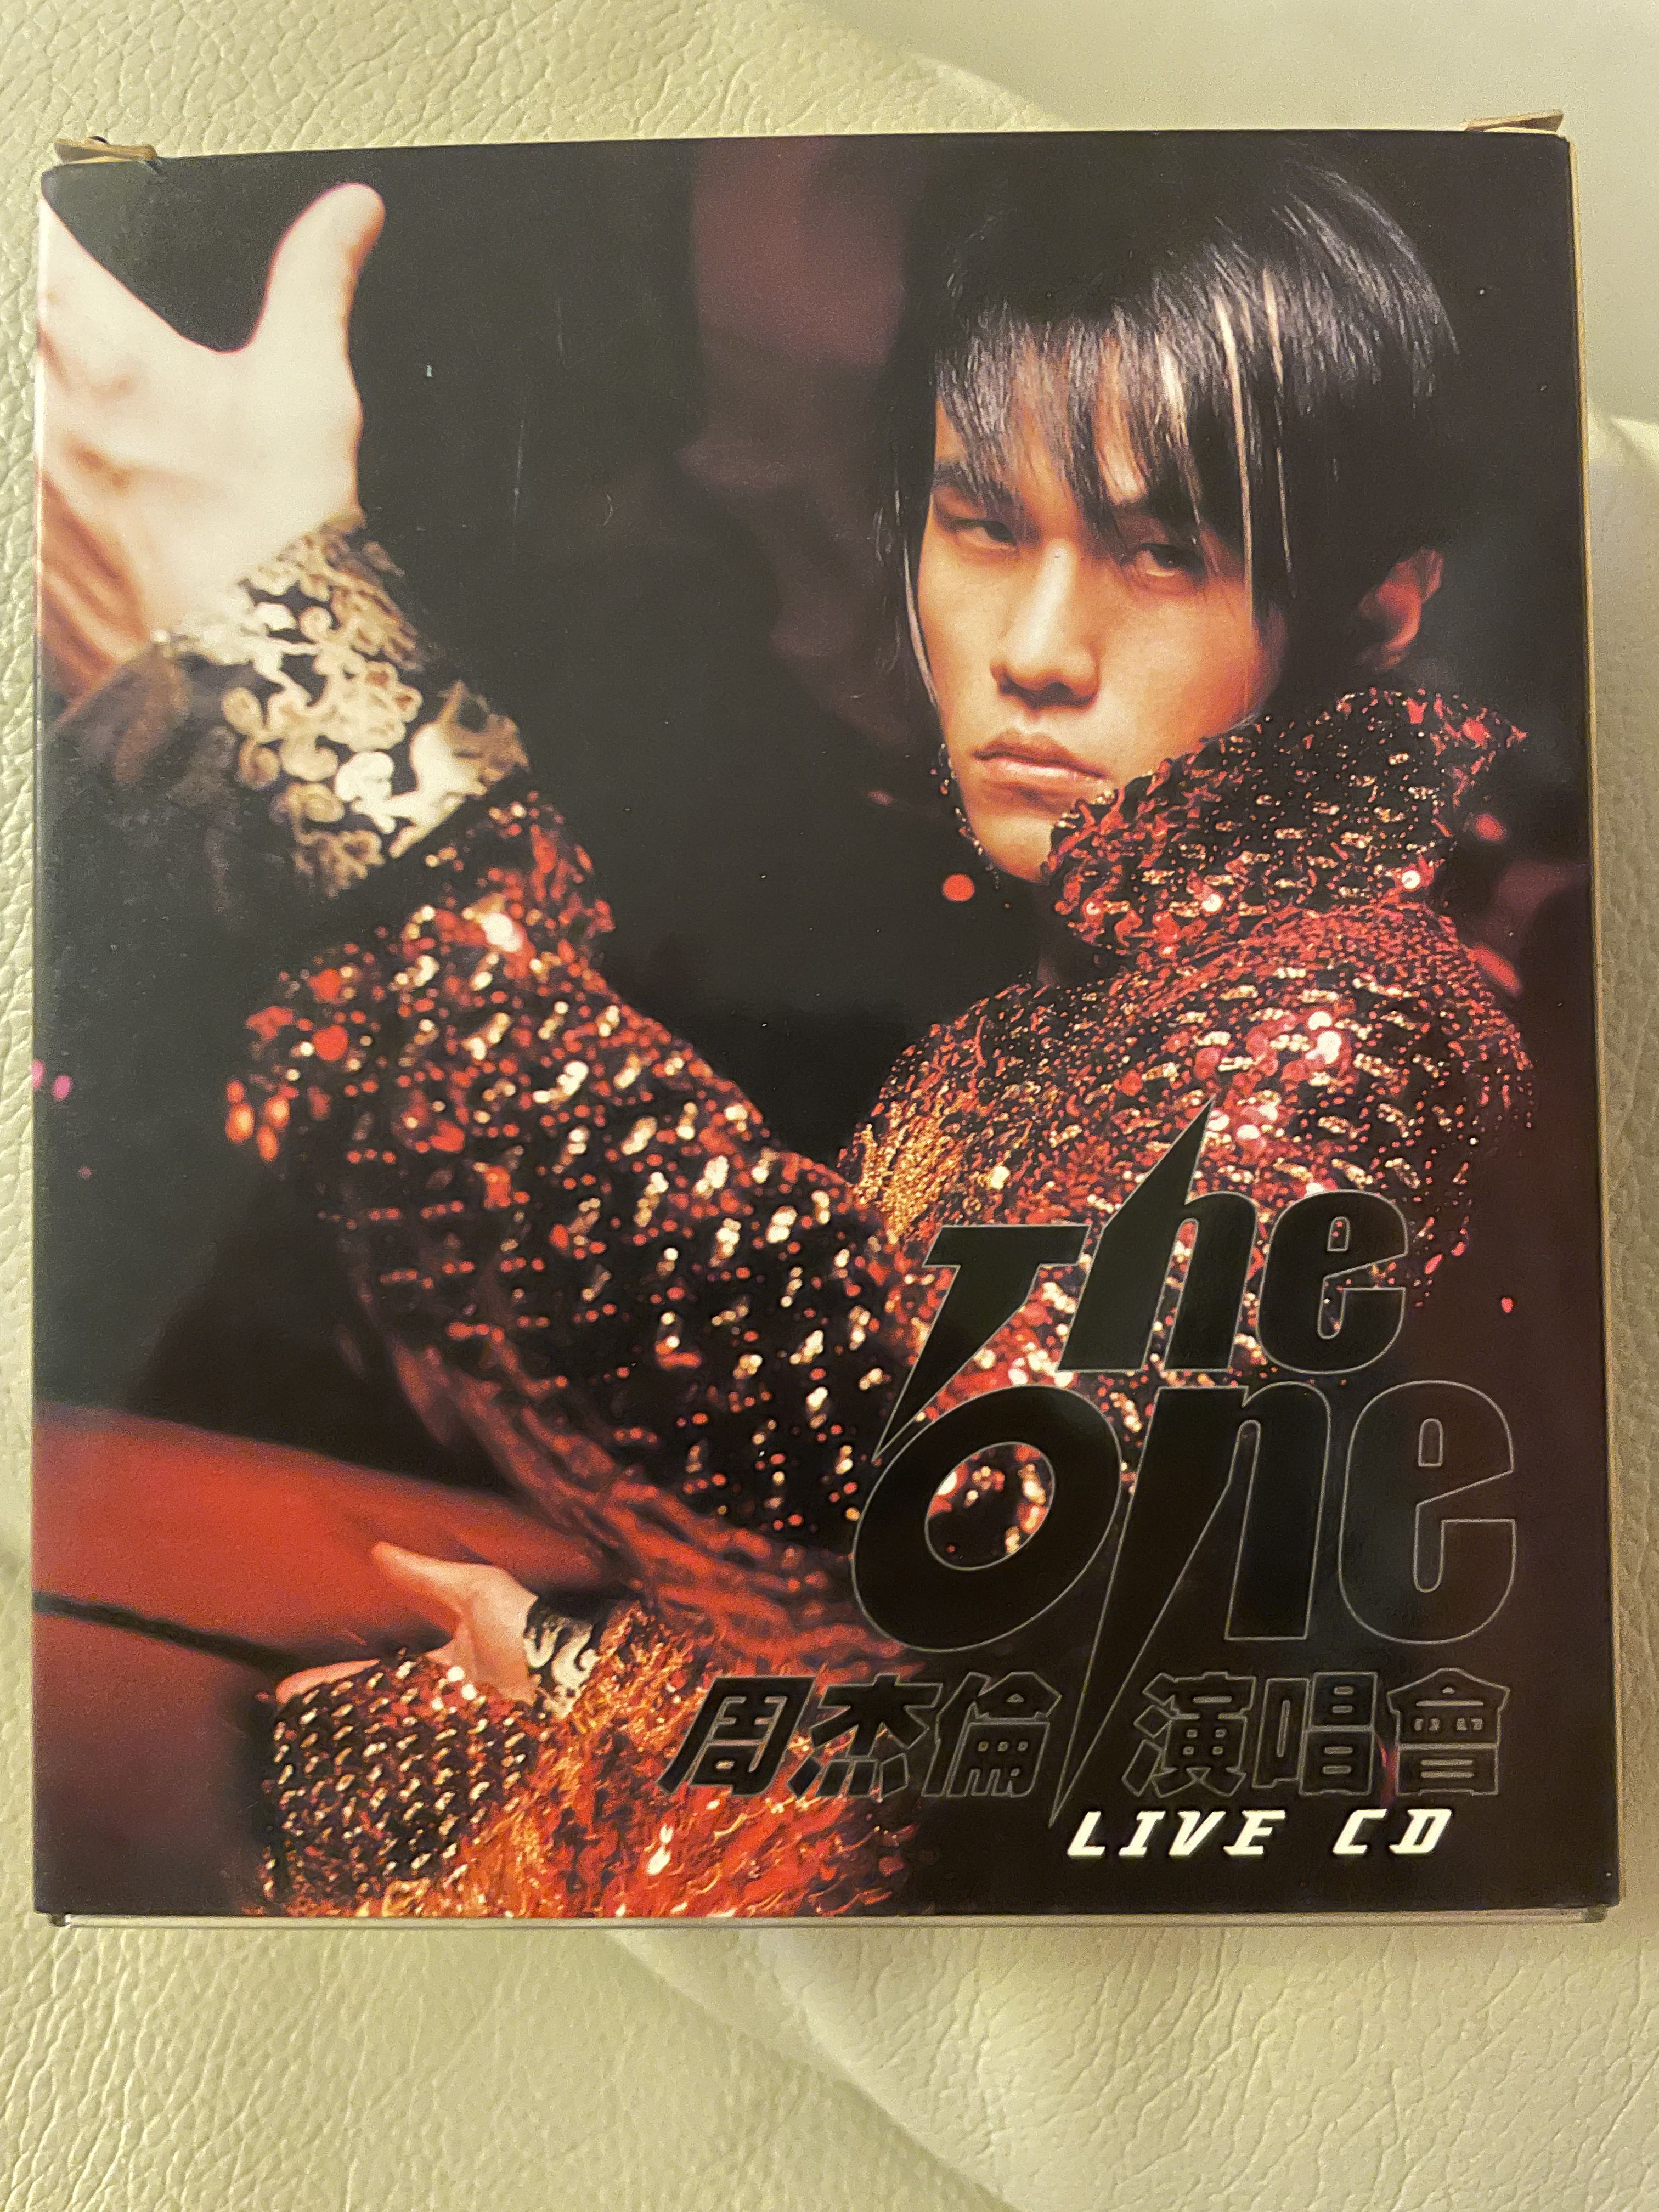 周杰倫Jay Chou The One 演唱會live 2CD + VCD, 興趣及遊戲, 音樂 